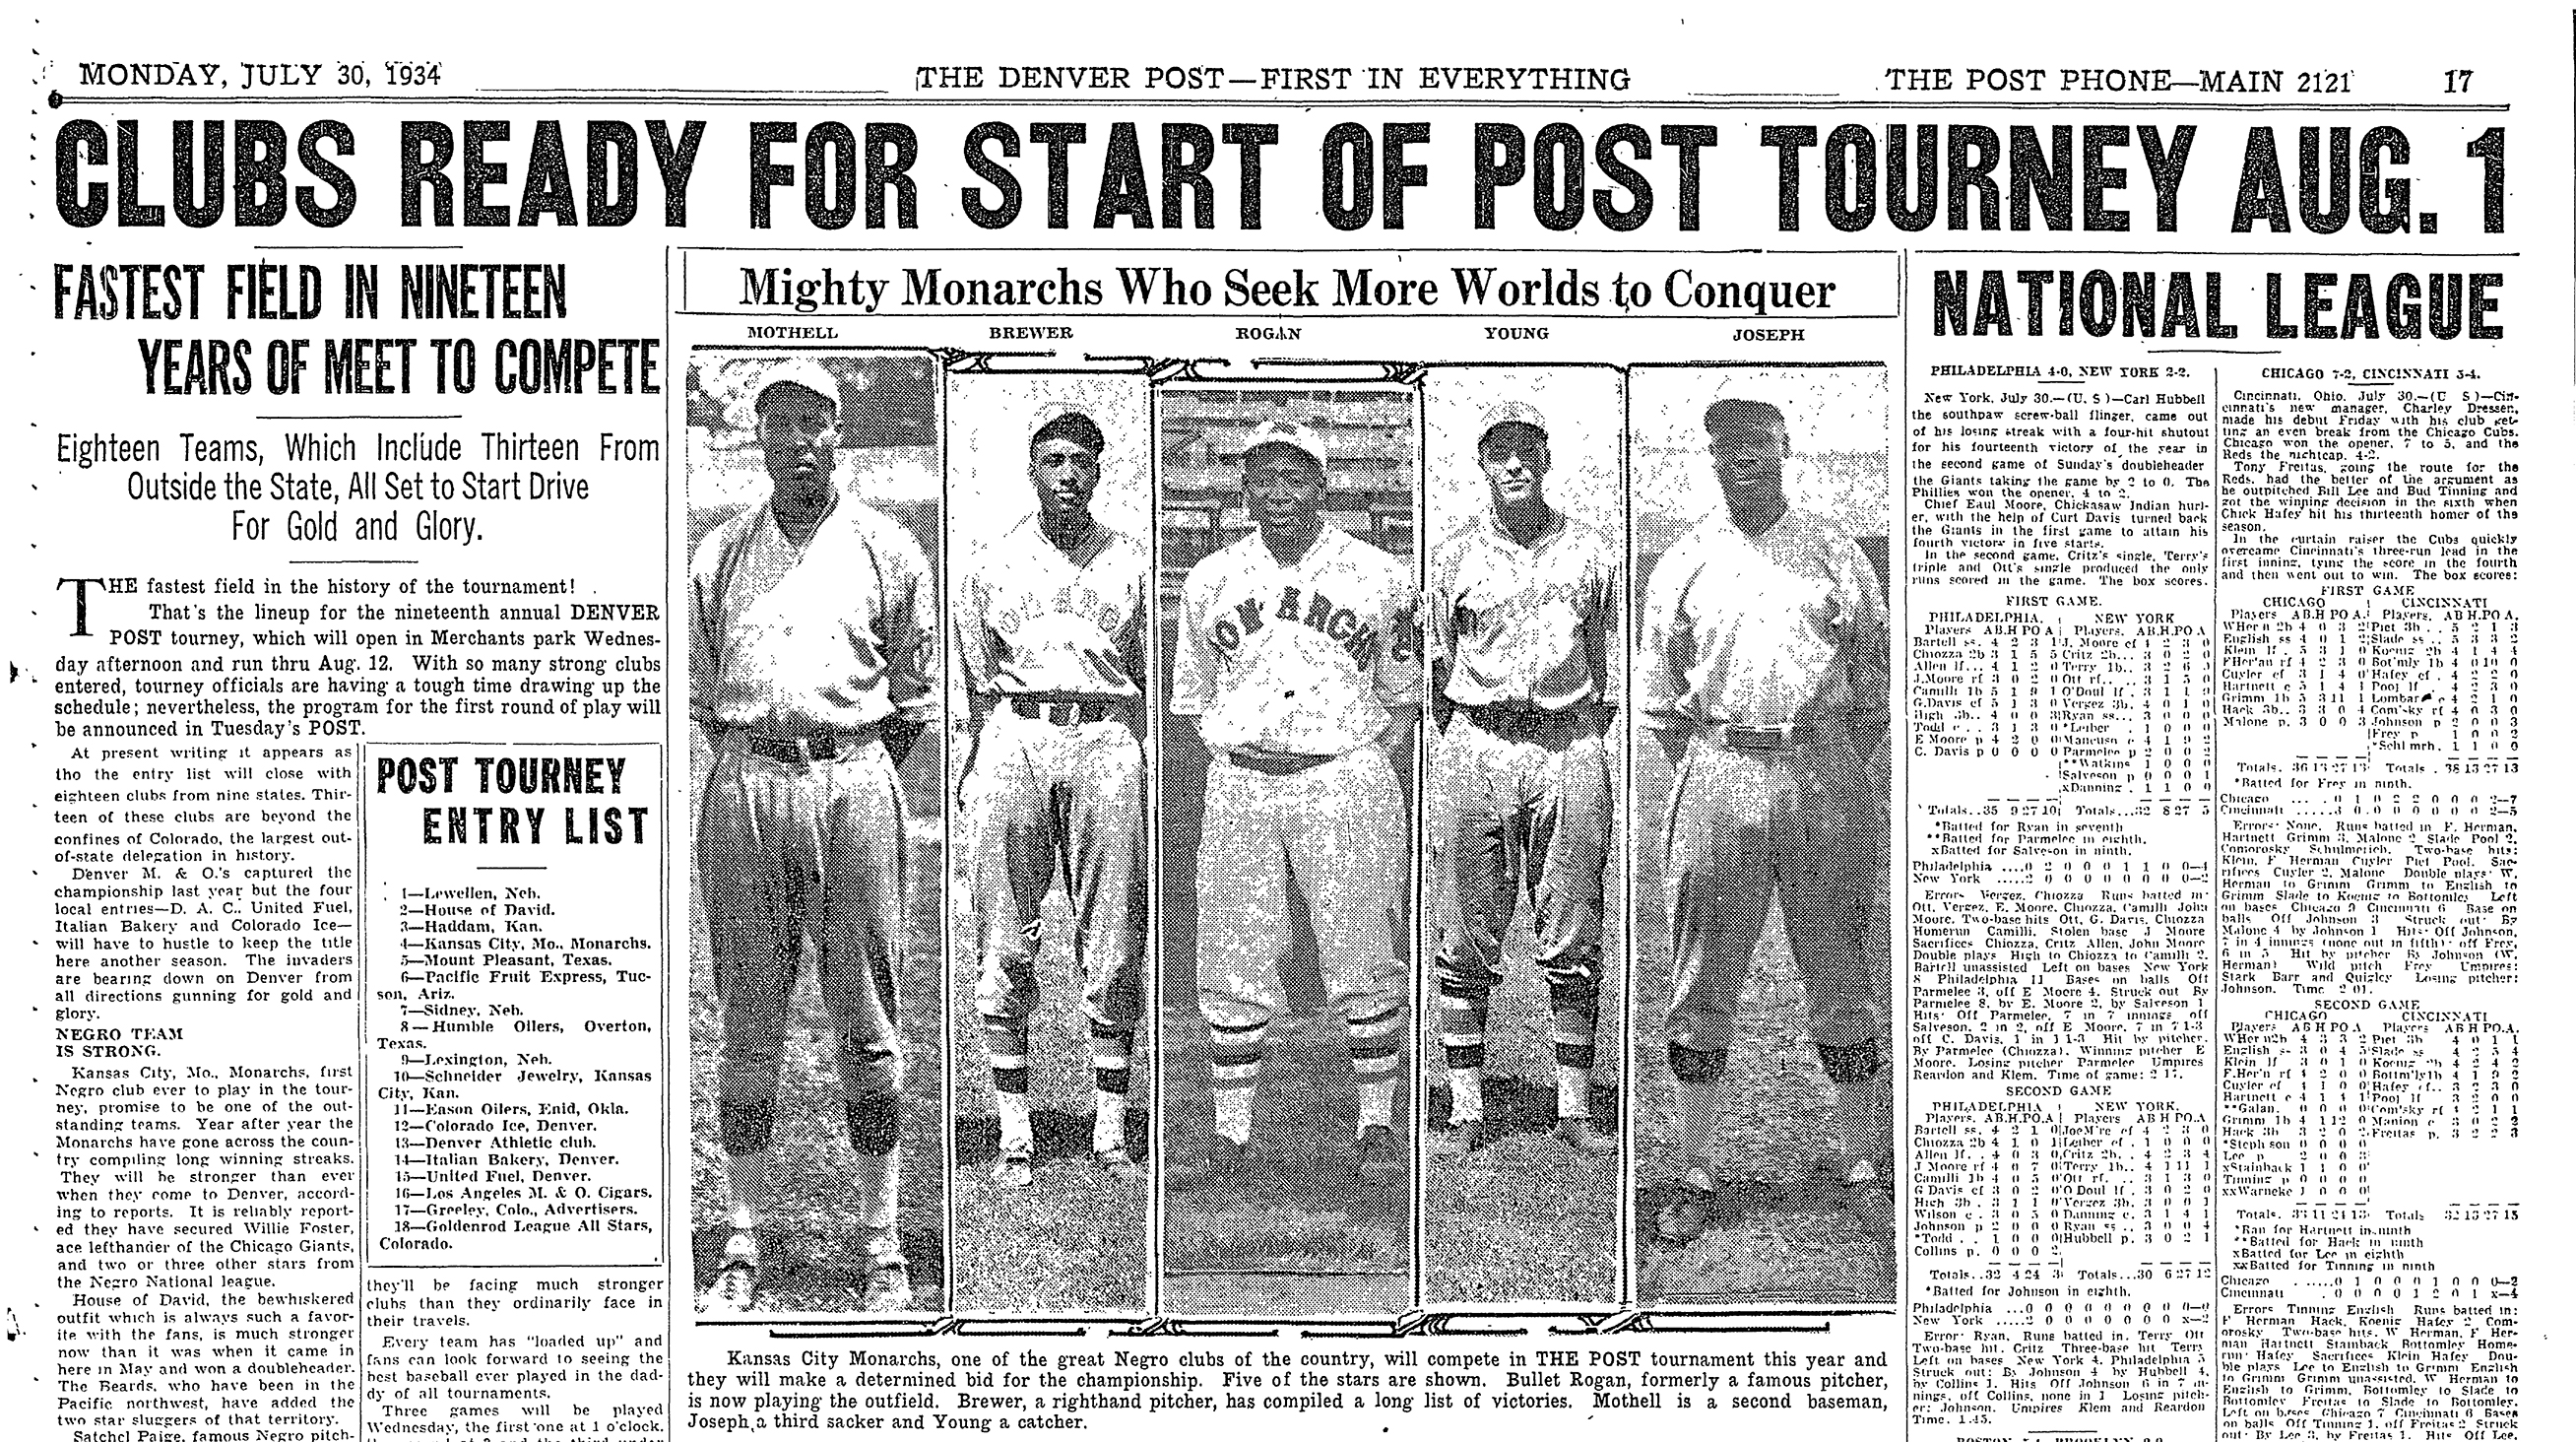 Denver Post July 30, 1934